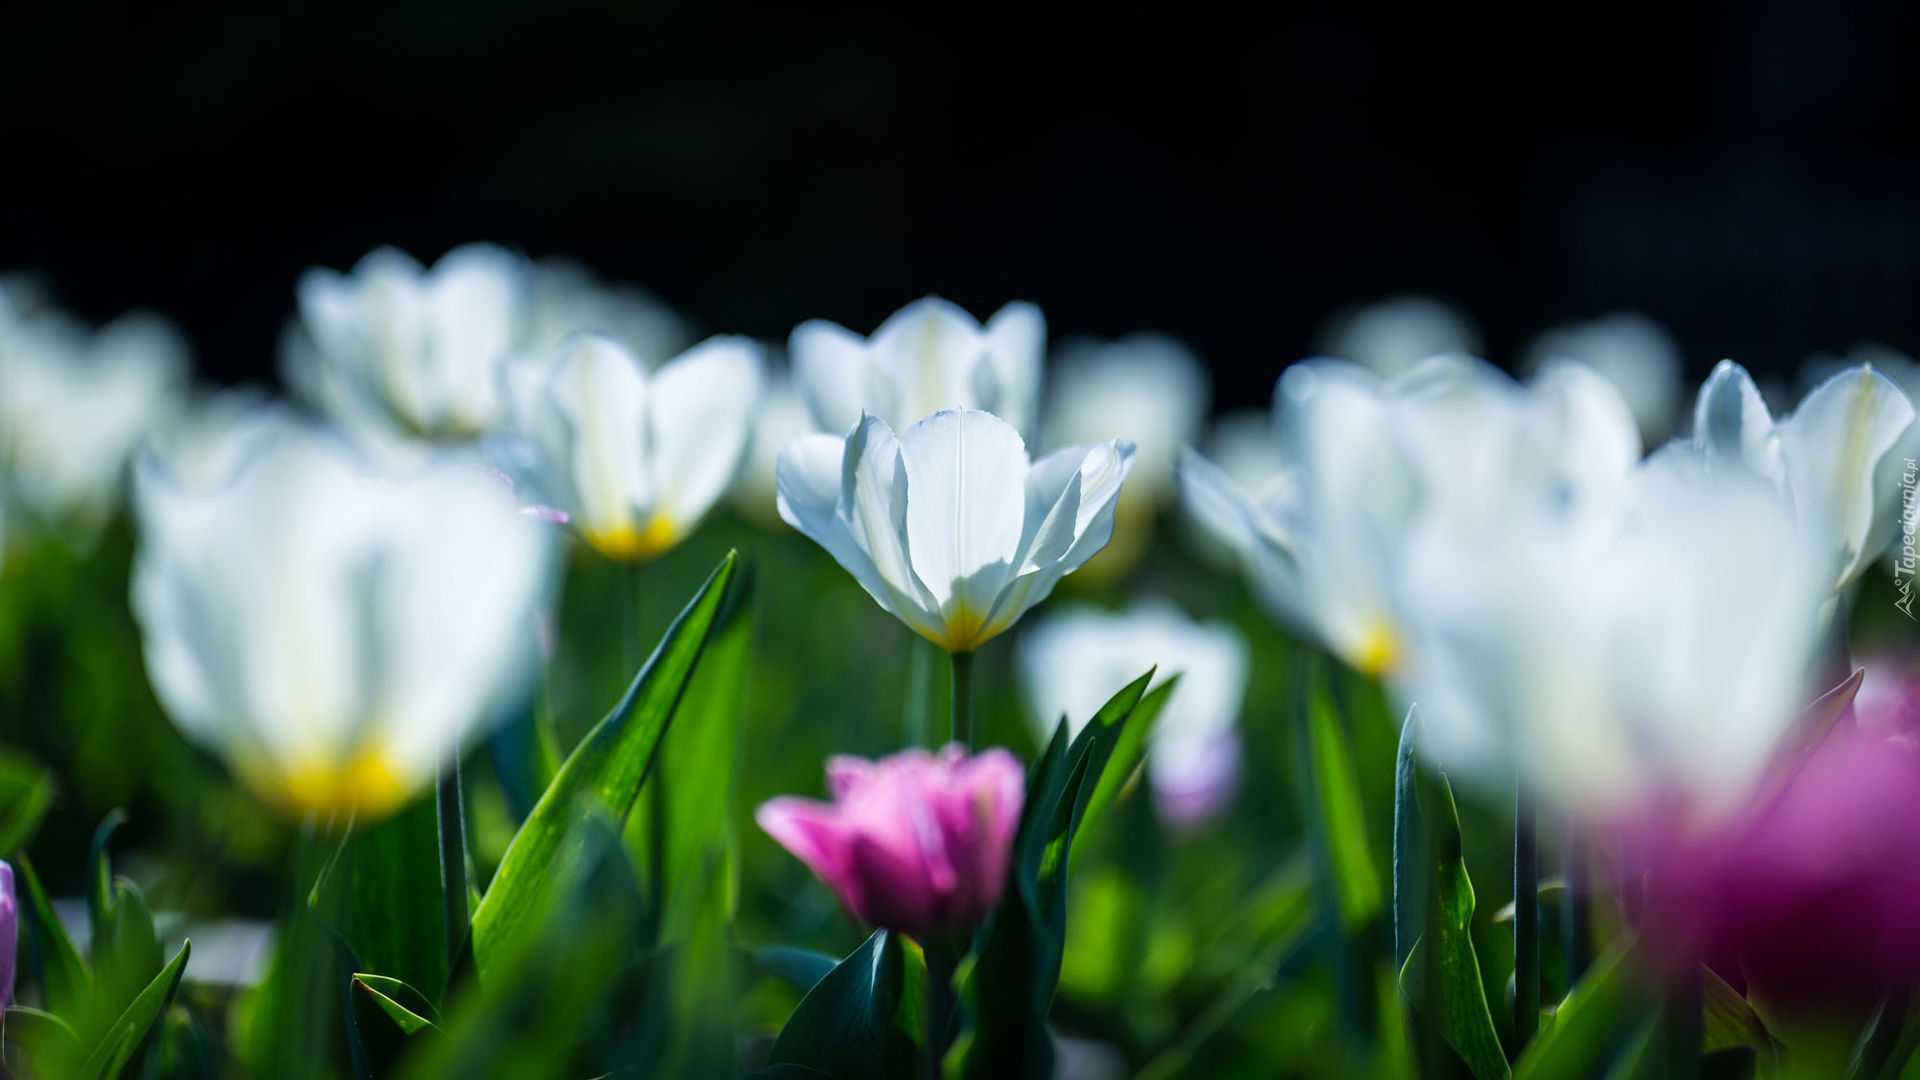 Kwiaty, Białe, Tulipany, Rozmycie